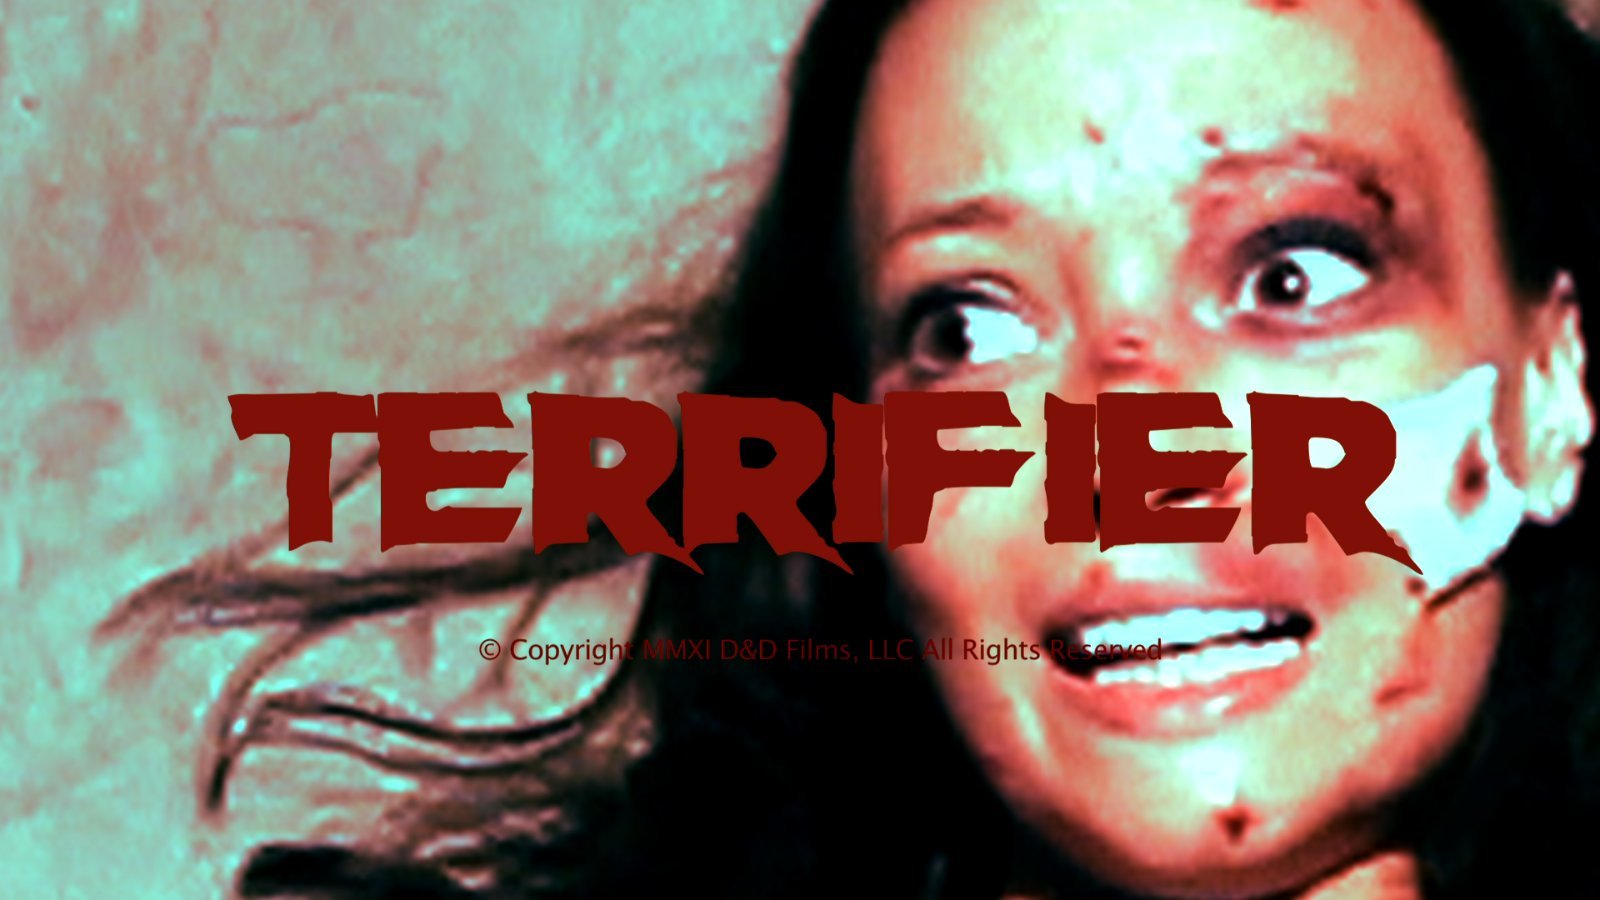 Terrifier (2011) Screenshot 2 